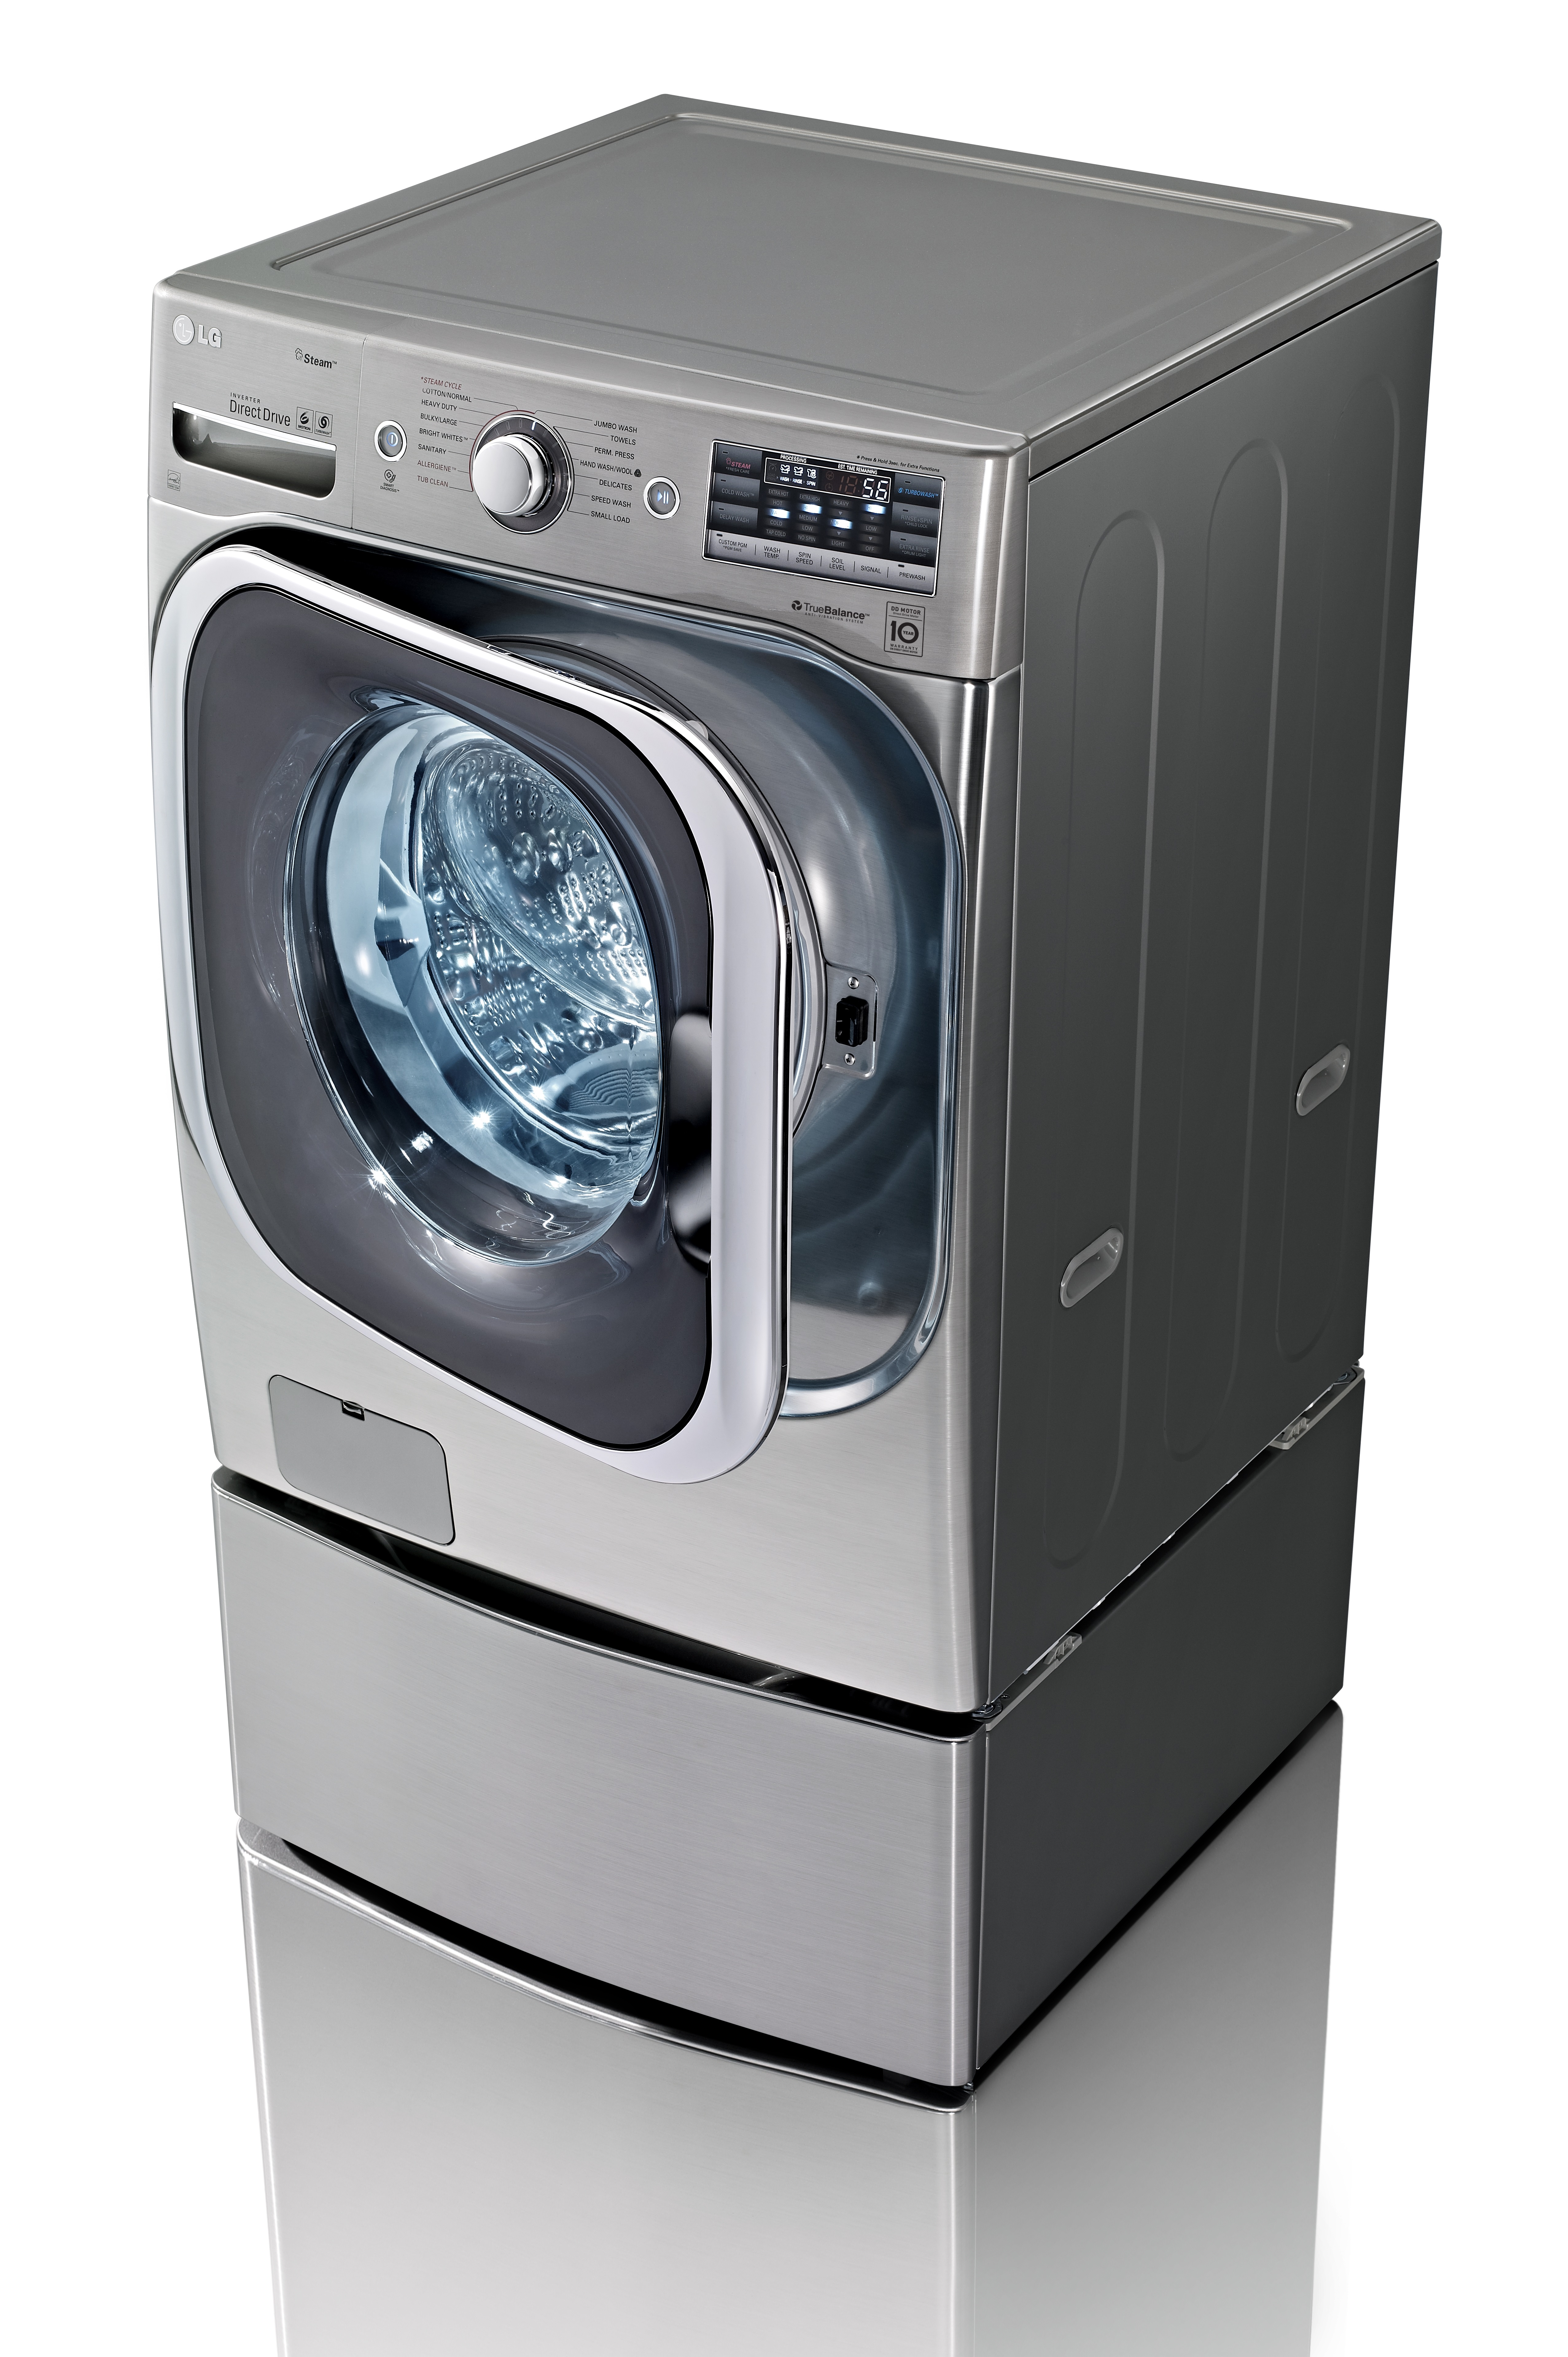 Недорогие стиральные машины пермь. Стиральная машина LG washing Machine. Стирально-сушильная машина LG. Стиральная машина с сушкой LG f2dv5s7s1e. LG стиральная машина 1004.